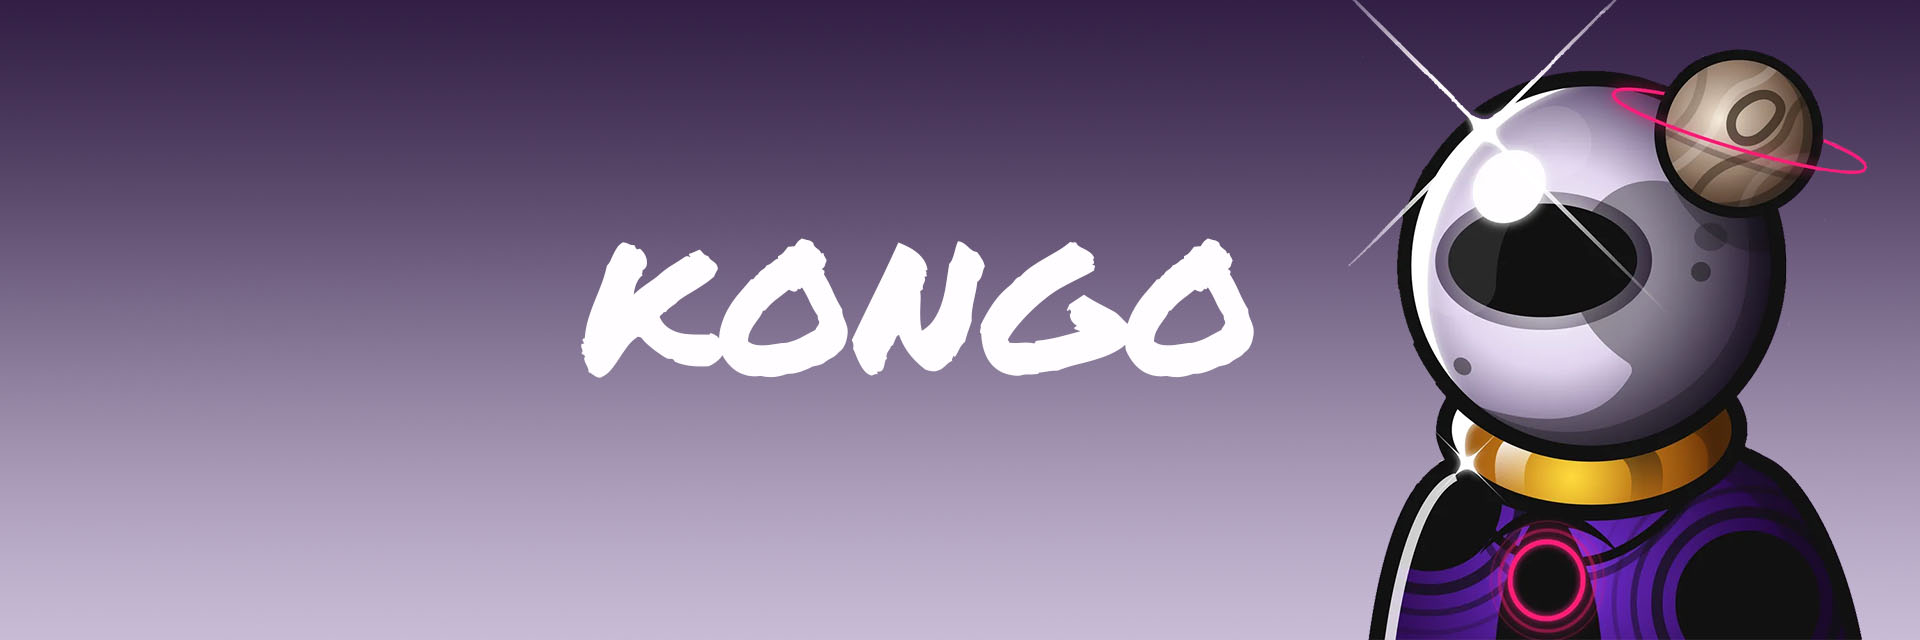 kongonongo 橫幅